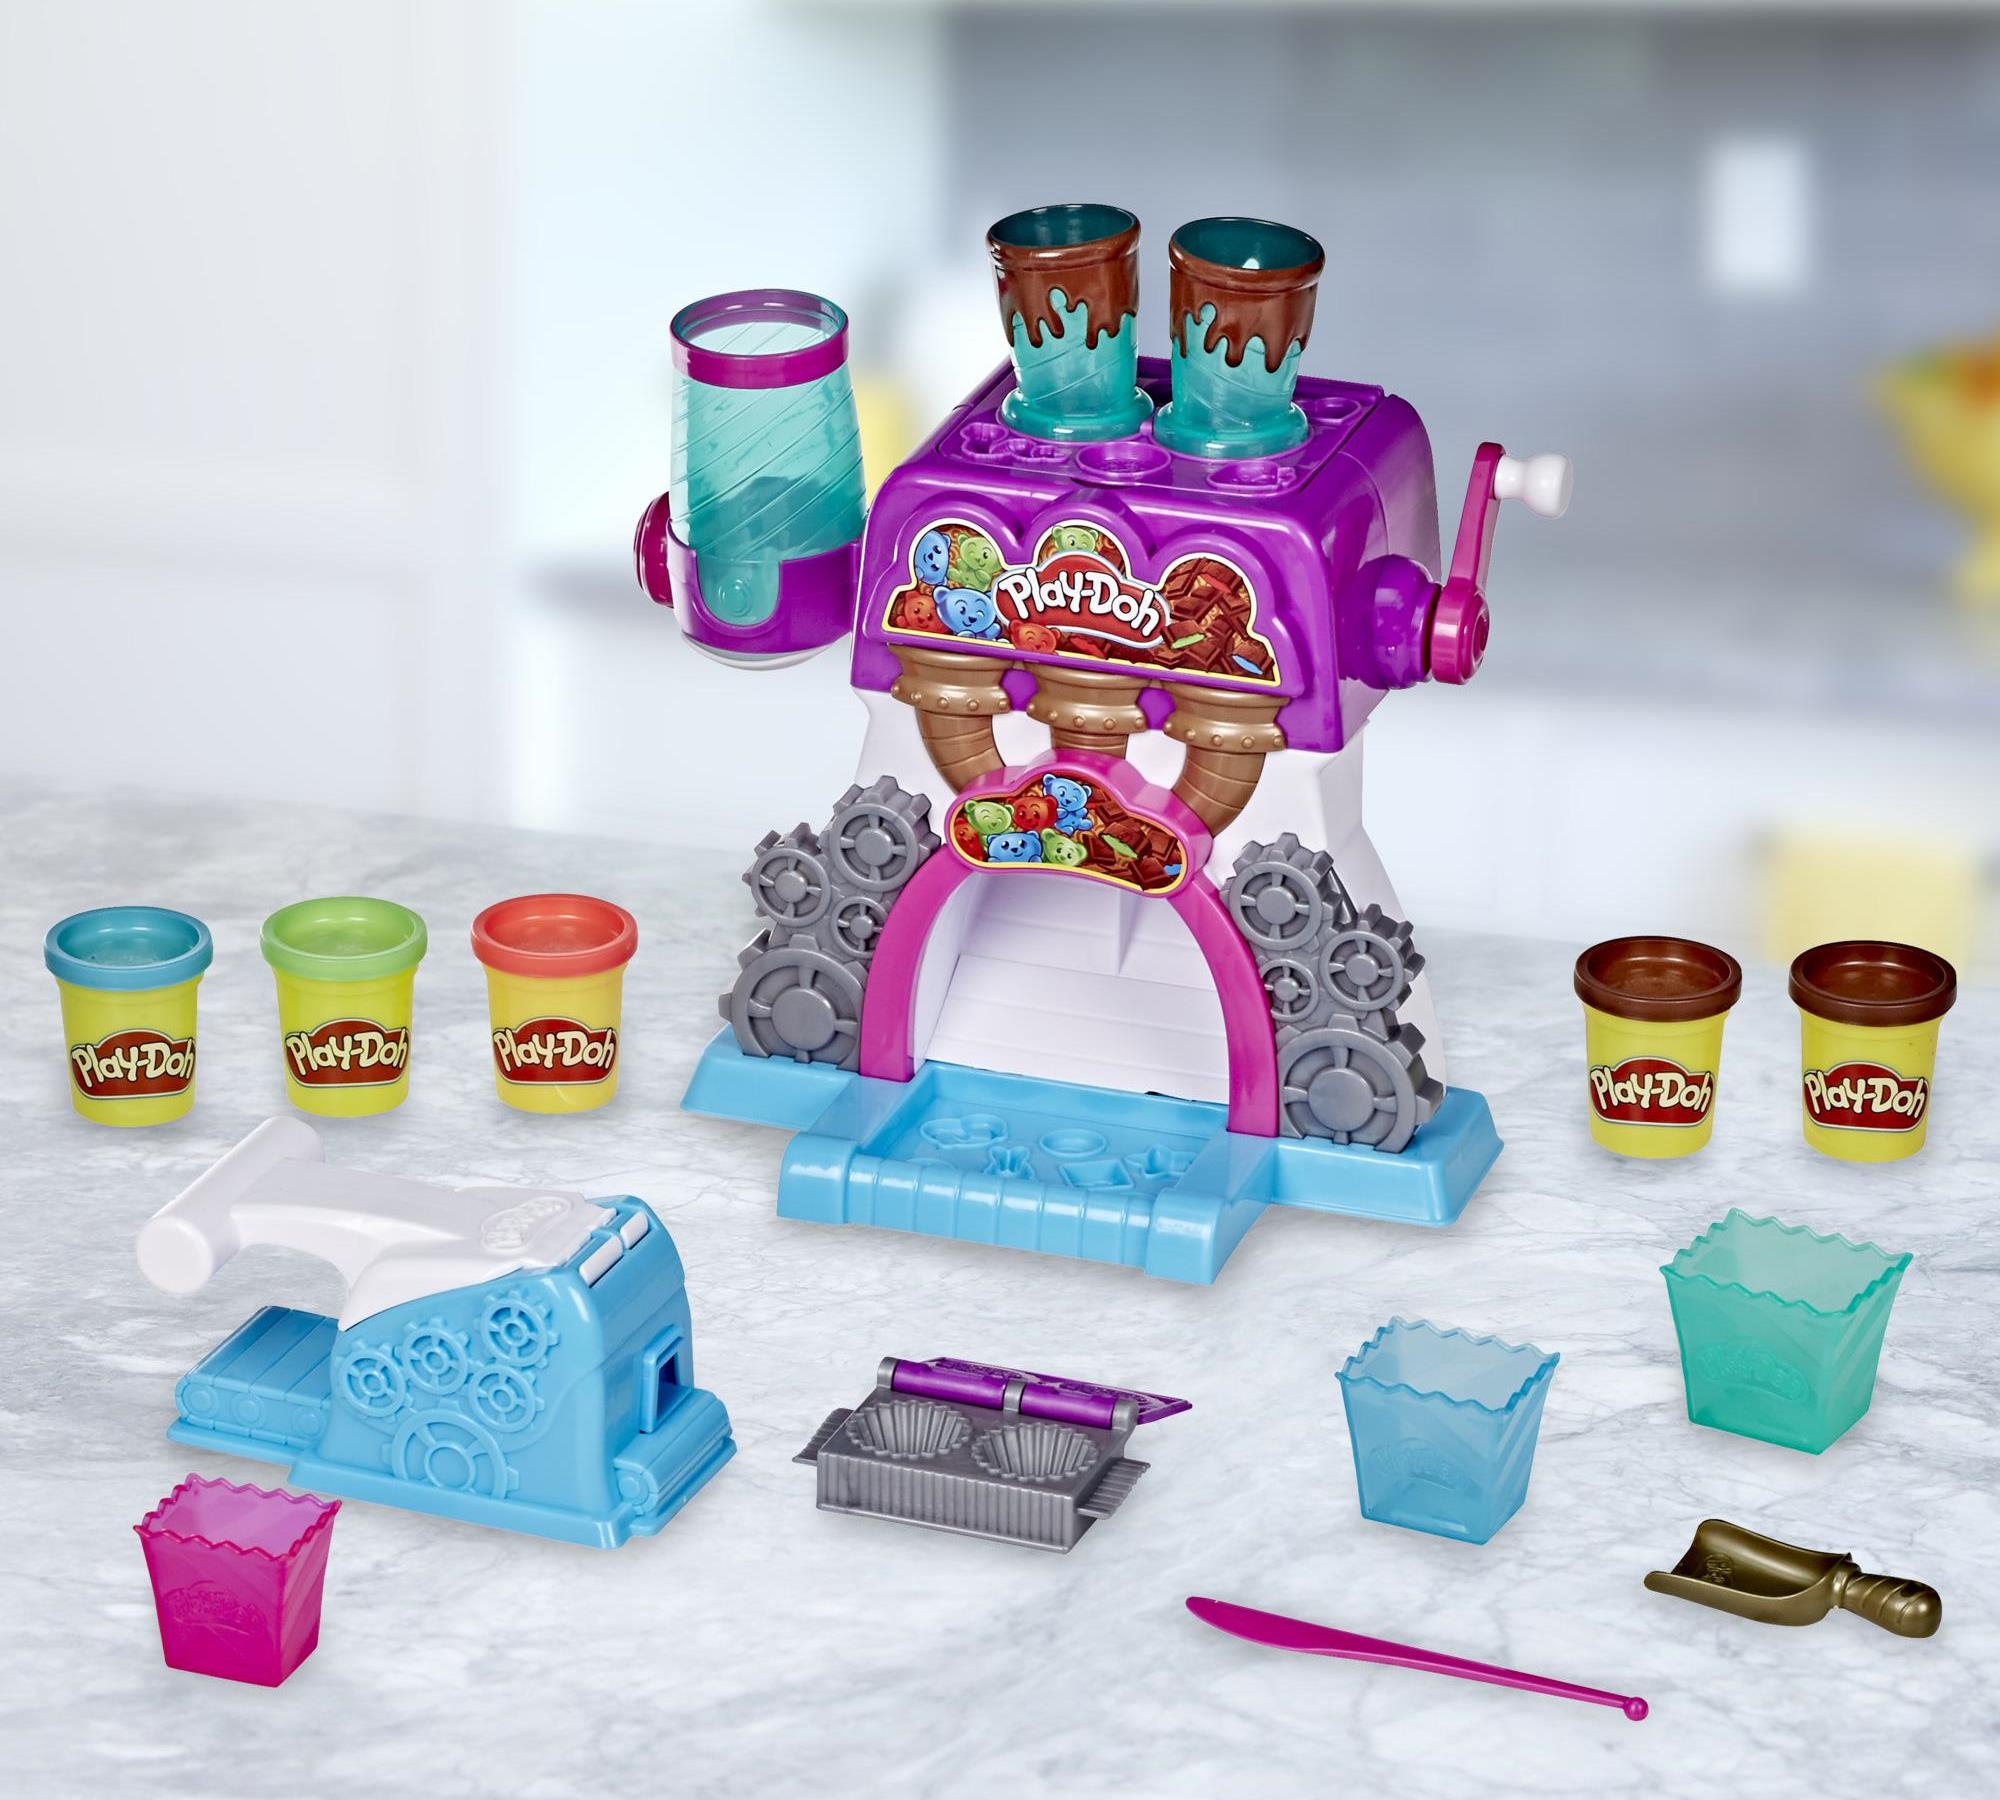 Herní sada Hasbro Play-Doh Továrna na čokoládu obsahuje cukrářský stroj, 5 kelímků, 3 poháry, lžíci, nůž, lis, formičku a modelínu, ze které děti mohou tvarovat cukrářské speciality dle své fantazie.